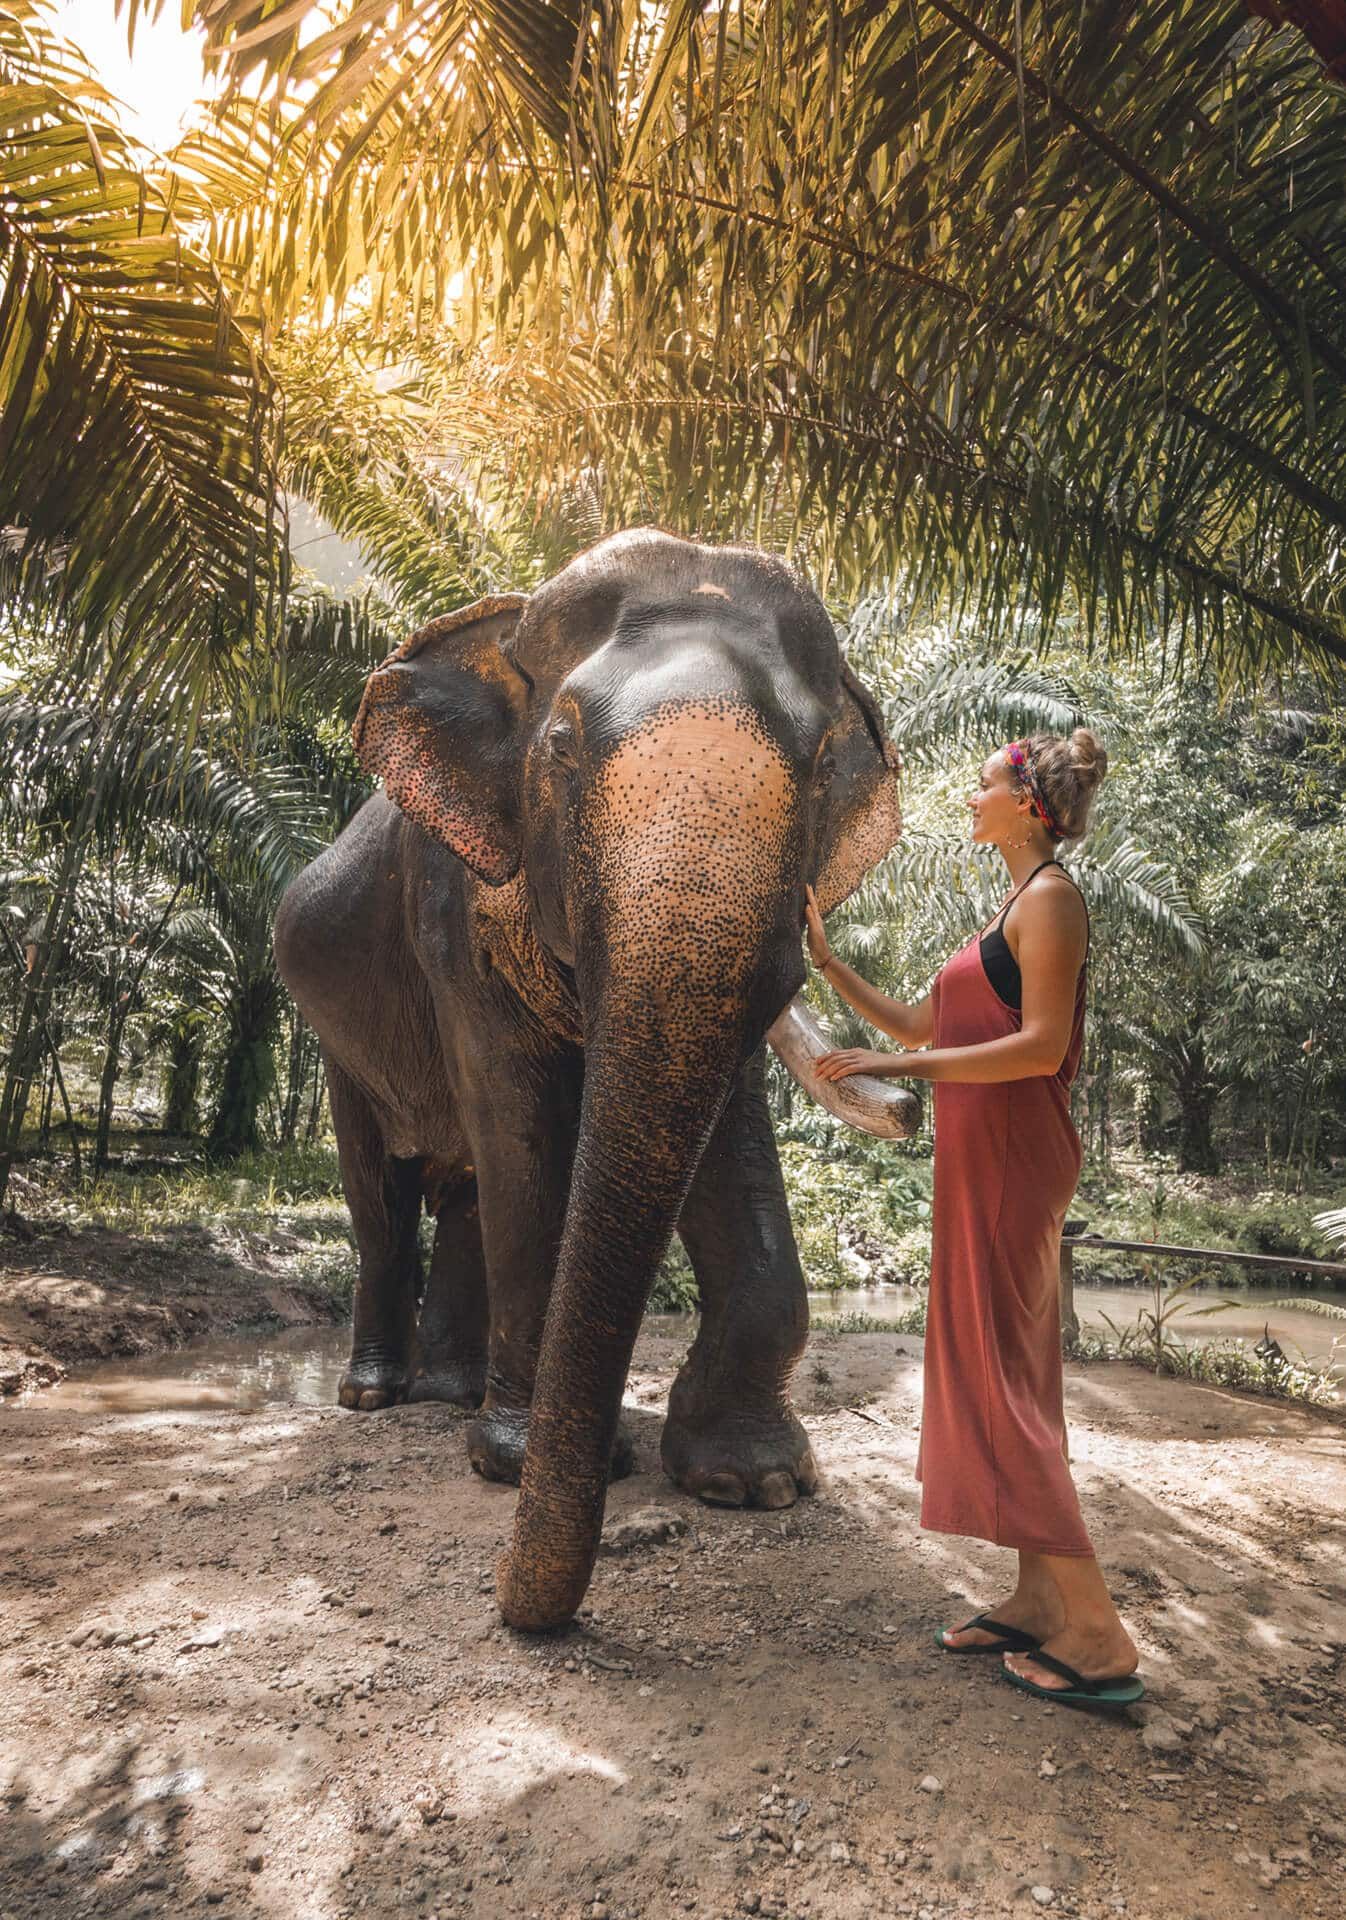 a woman pets an elephant at khao sok national park